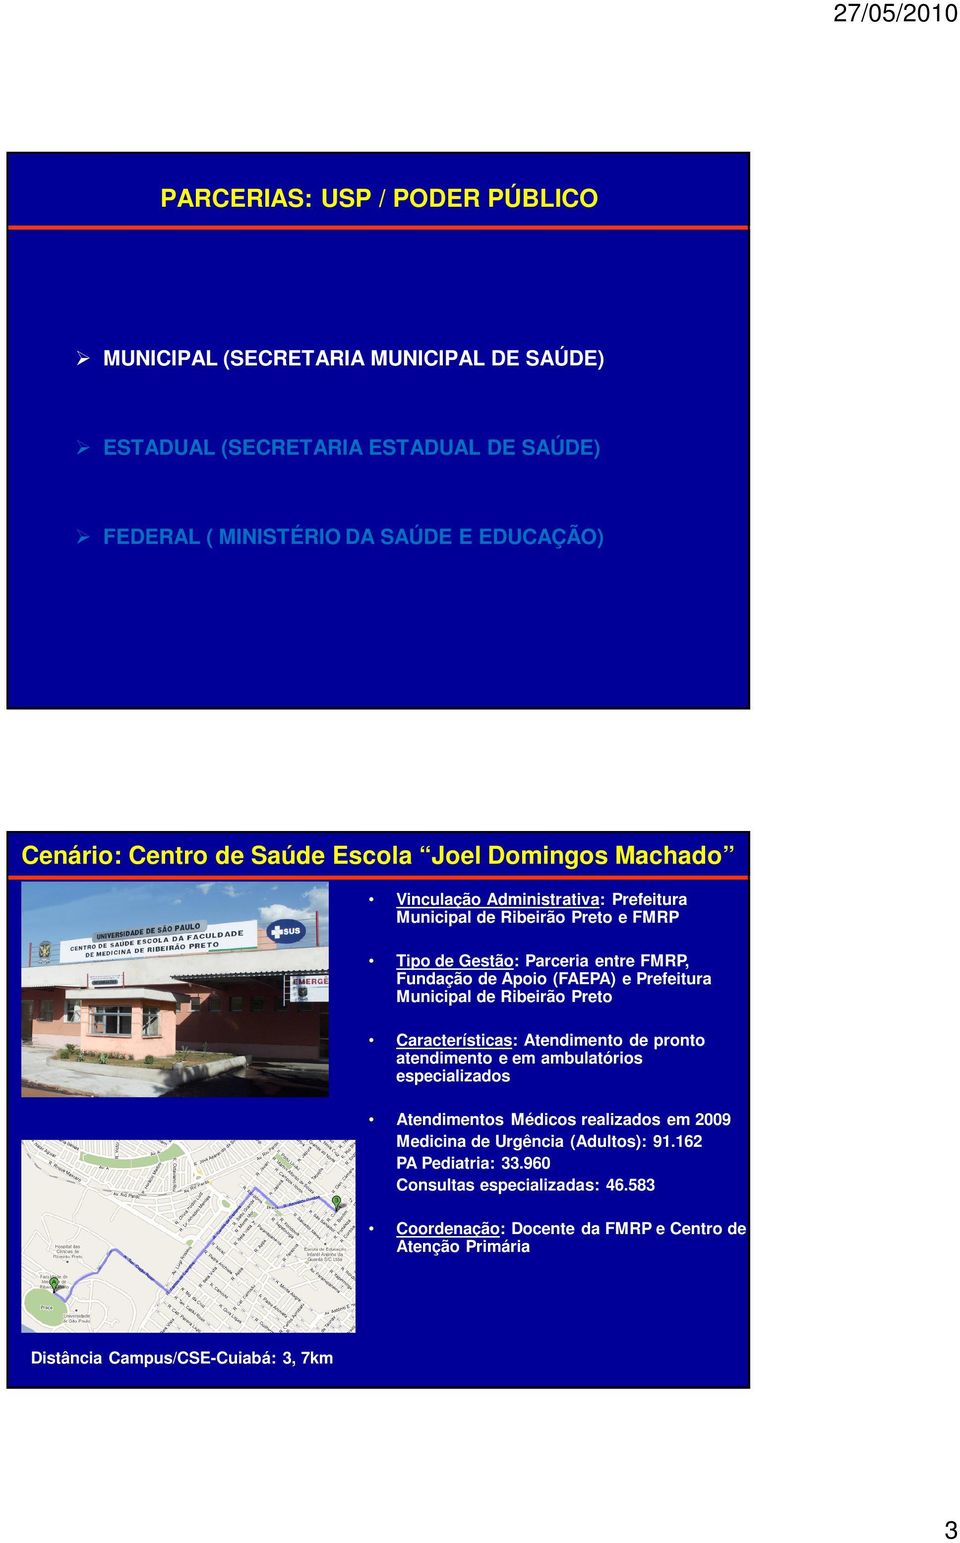 Prefeitura Municipal de Ribeirão Preto Características: Atendimento de pronto atendimento e em ambulatórios especializados Atendimentos Médicos realizados em 2009 Medicina de